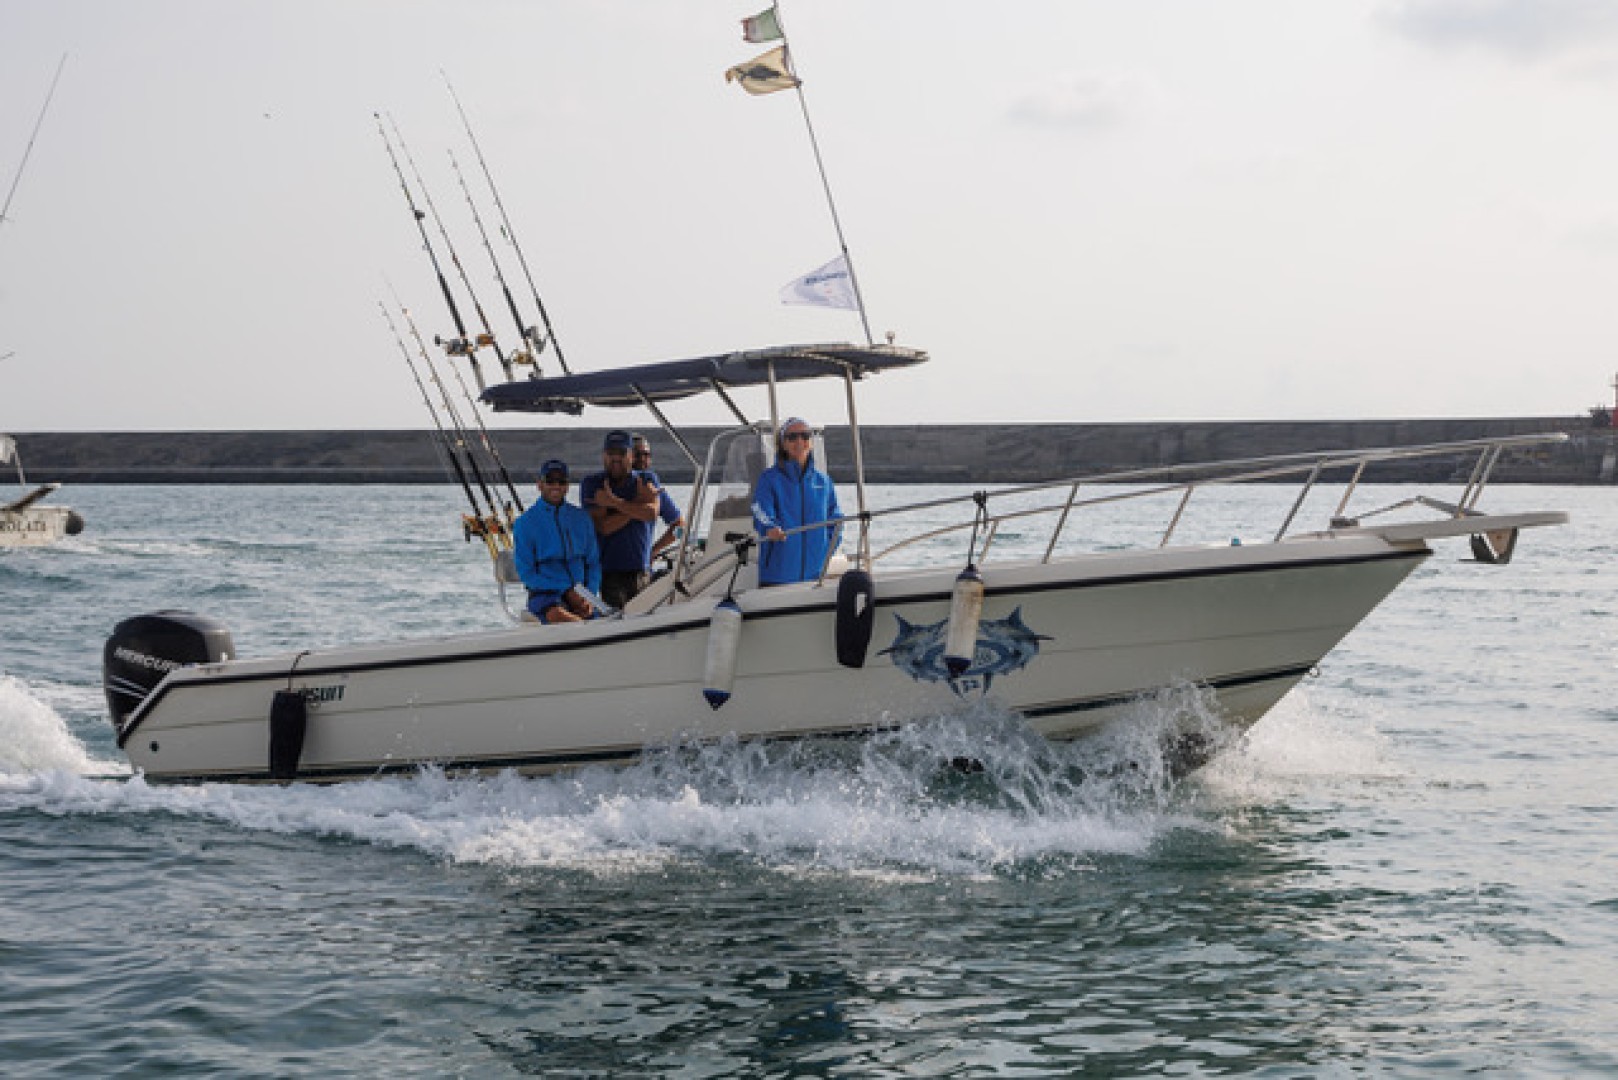 Grande successo per il Lowrance Trophy 2022, il Fishing Tournament dello Yacht Club Italiano